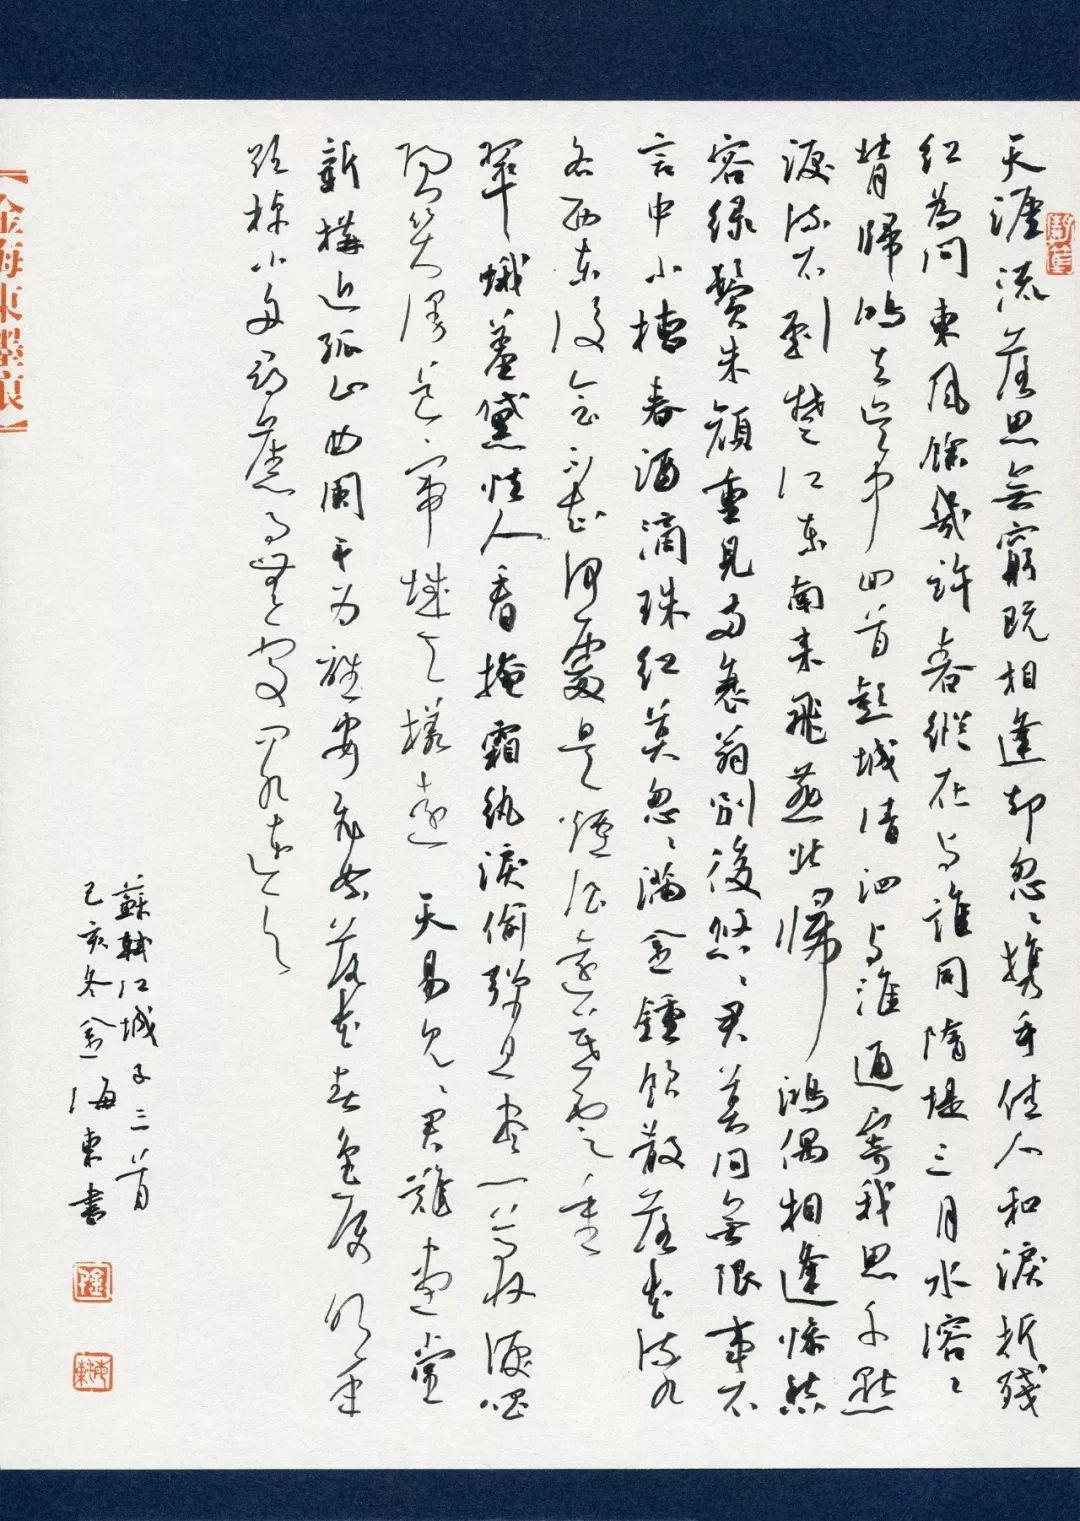 金海东-"品翰堂杯"第六届中国硬笔书法公开赛作品选登-成人组no.339